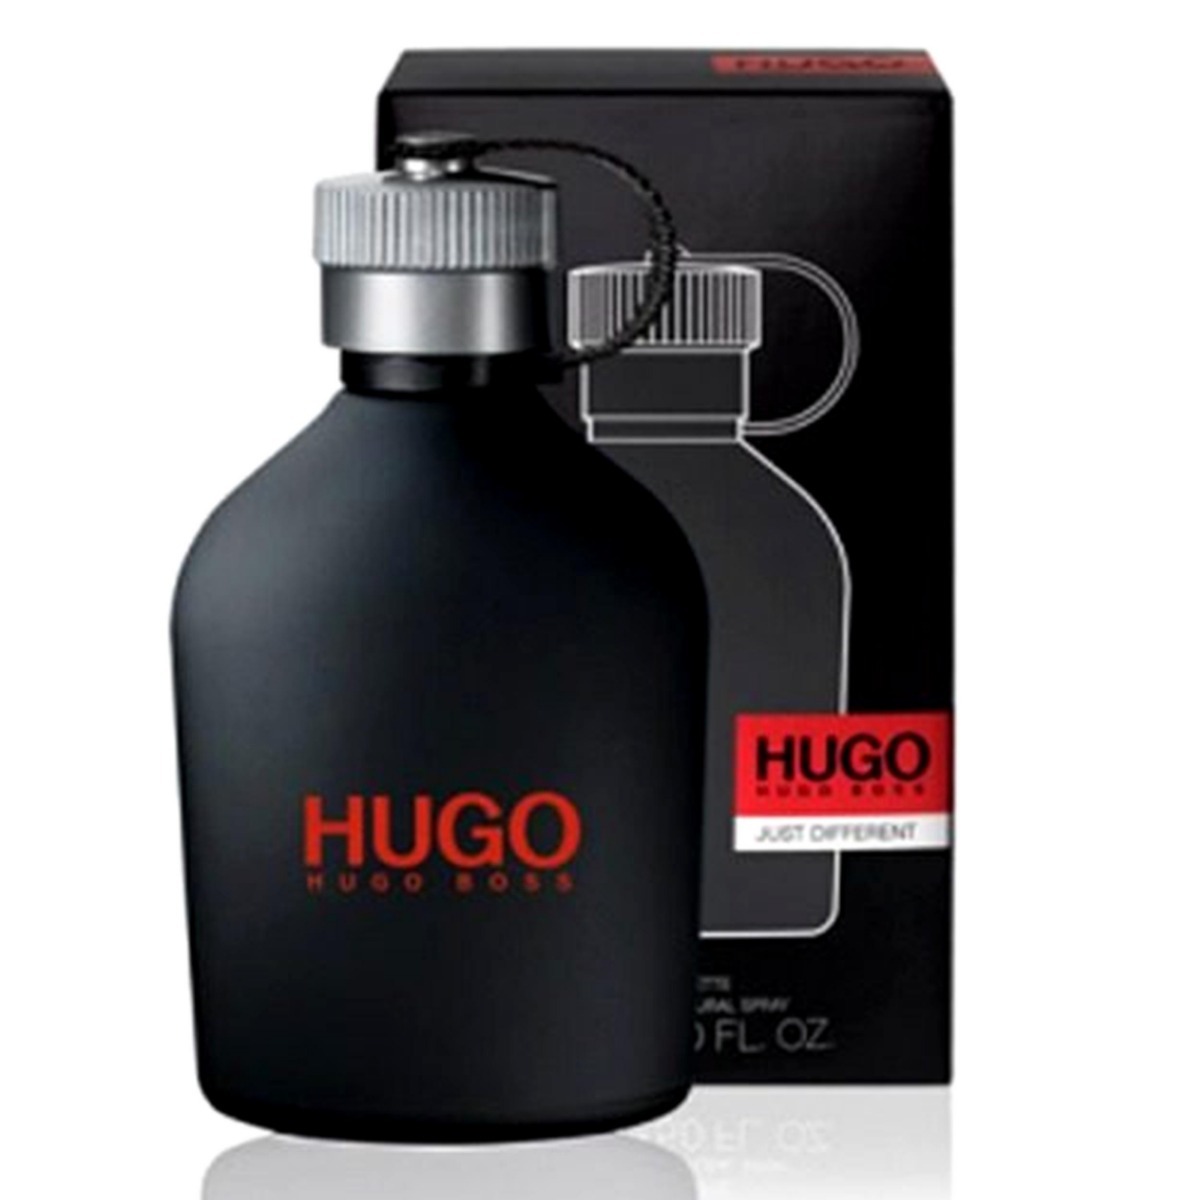 Хуго босс сайт. Hugo Boss just different 75мл. Hugo Boss just different 150 мл. Hugo "Hugo Boss just different" 100 ml. Hugo Boss Hugo Boss Hugo man туалетная вода 100.